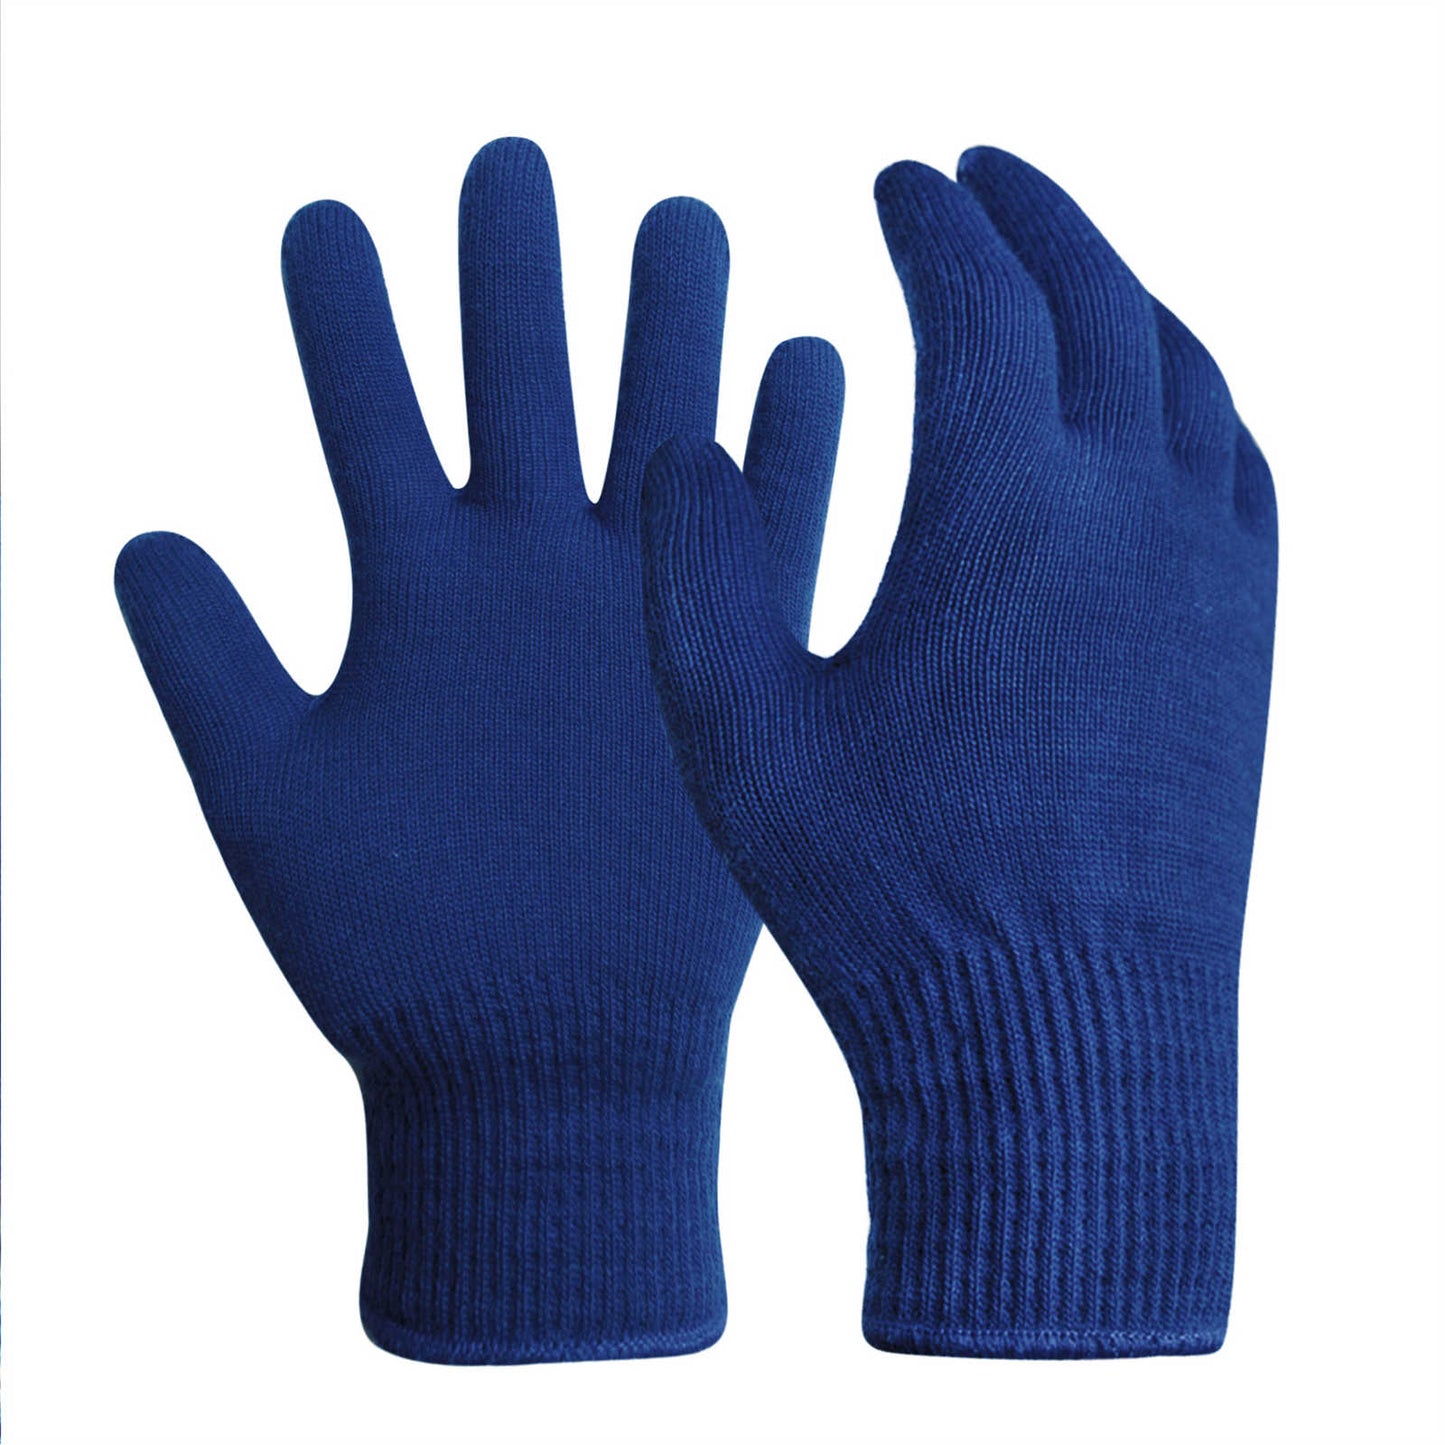 EvridWear 1 Pair Merino Wool String Knit Liner Full Finger Gloves, Men Women (Navy)